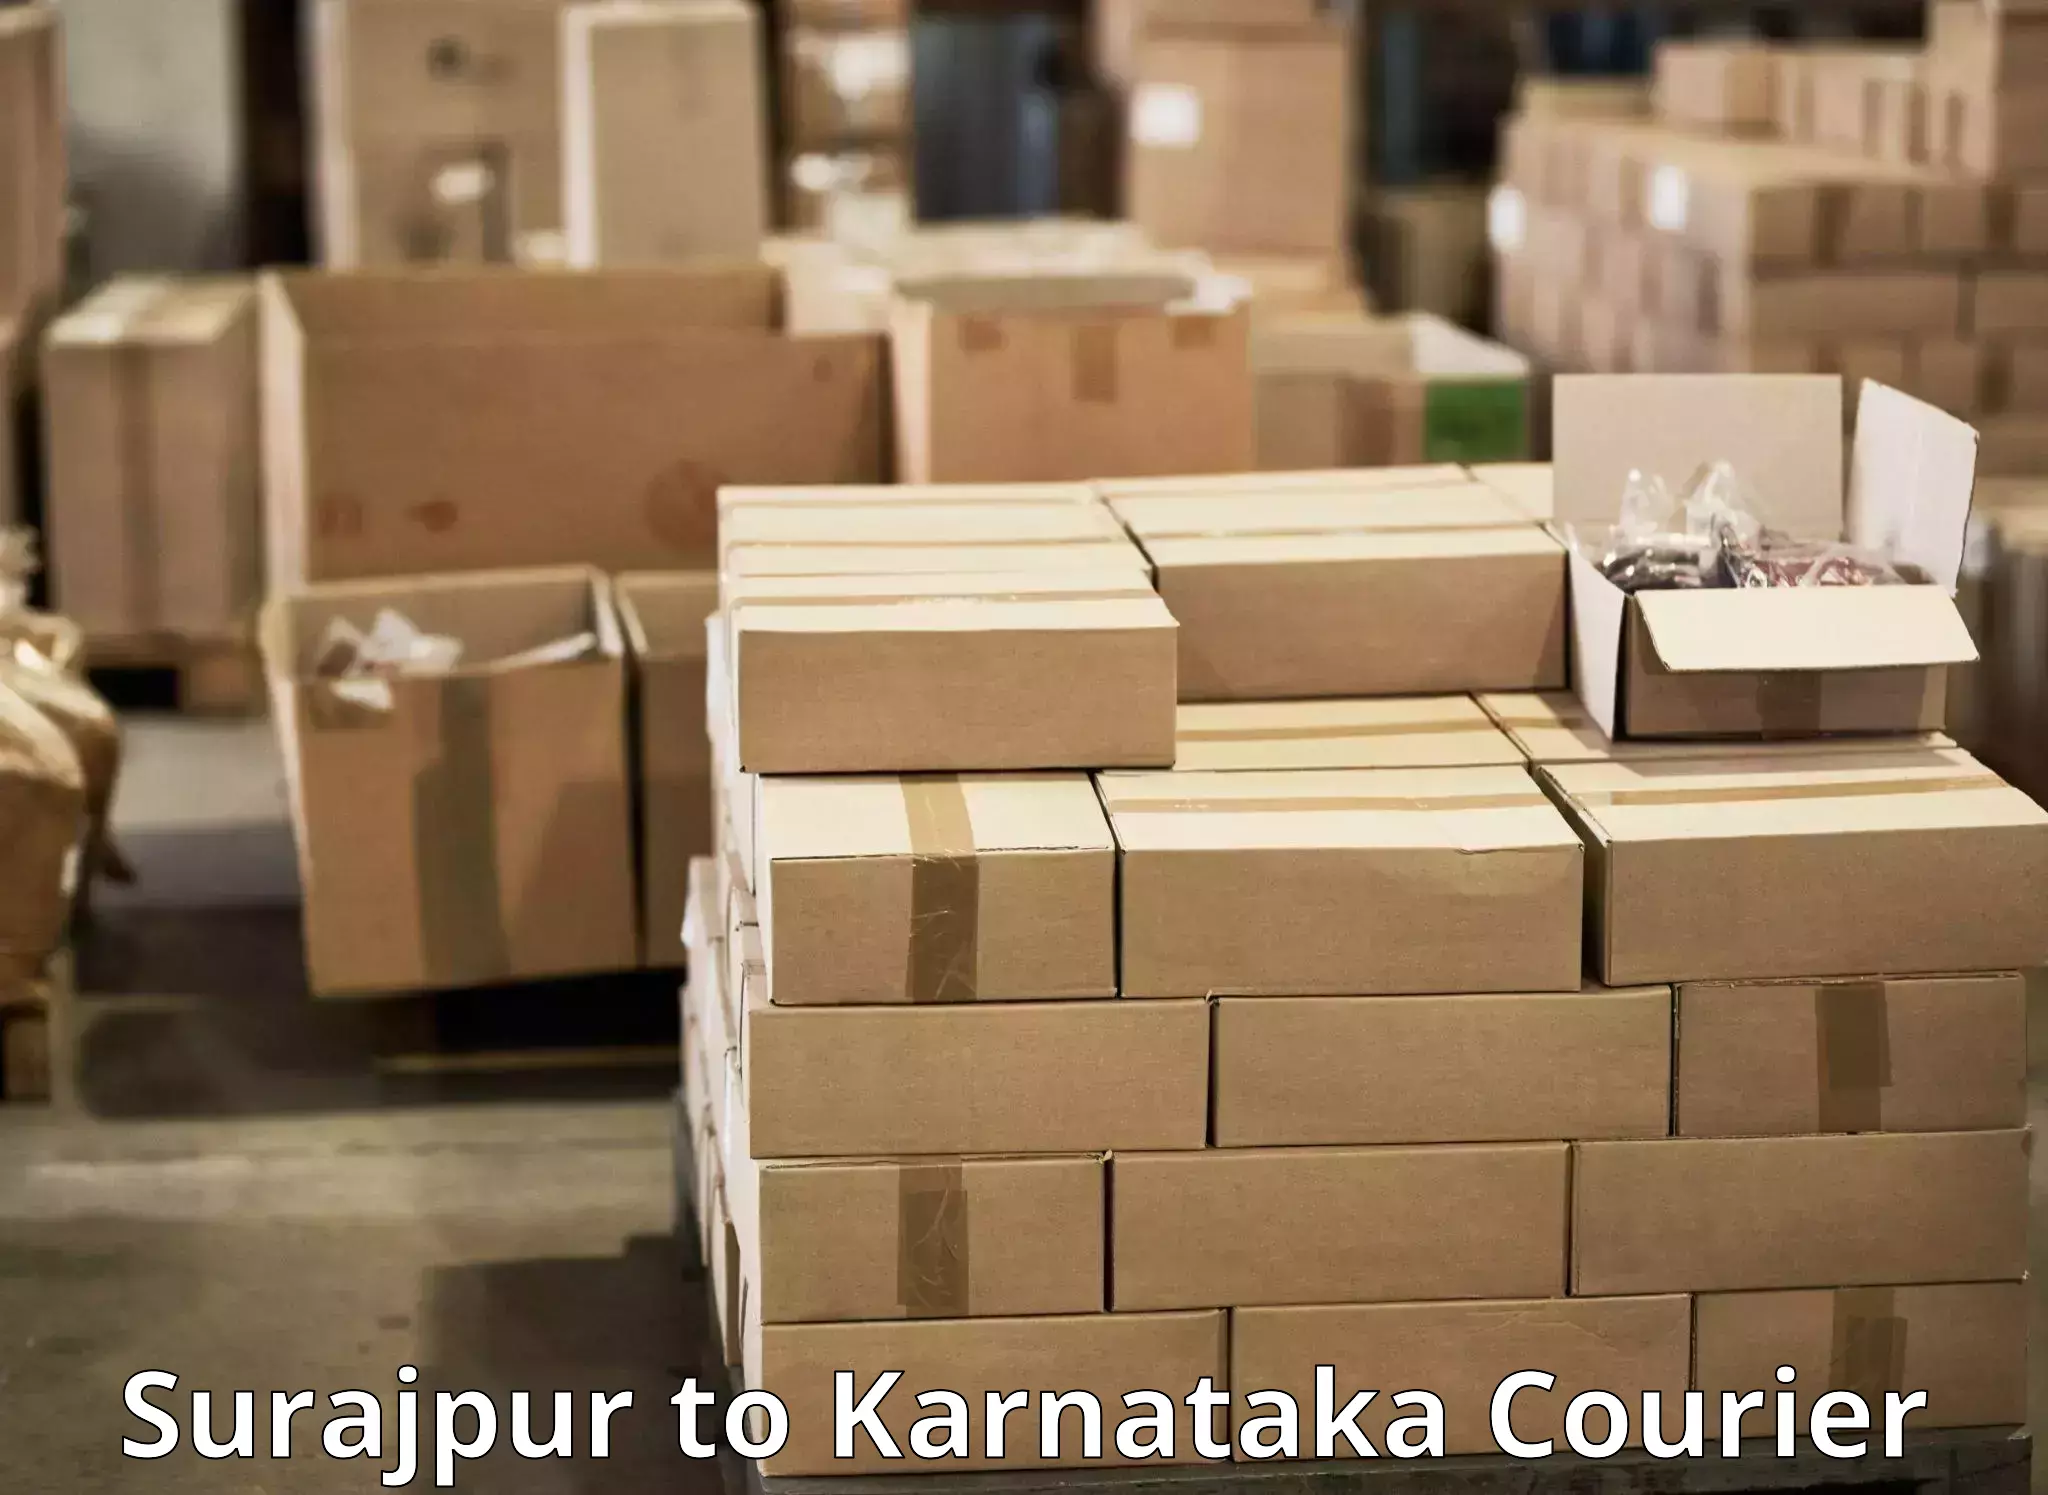 Package tracking in Surajpur to Basavakalyan